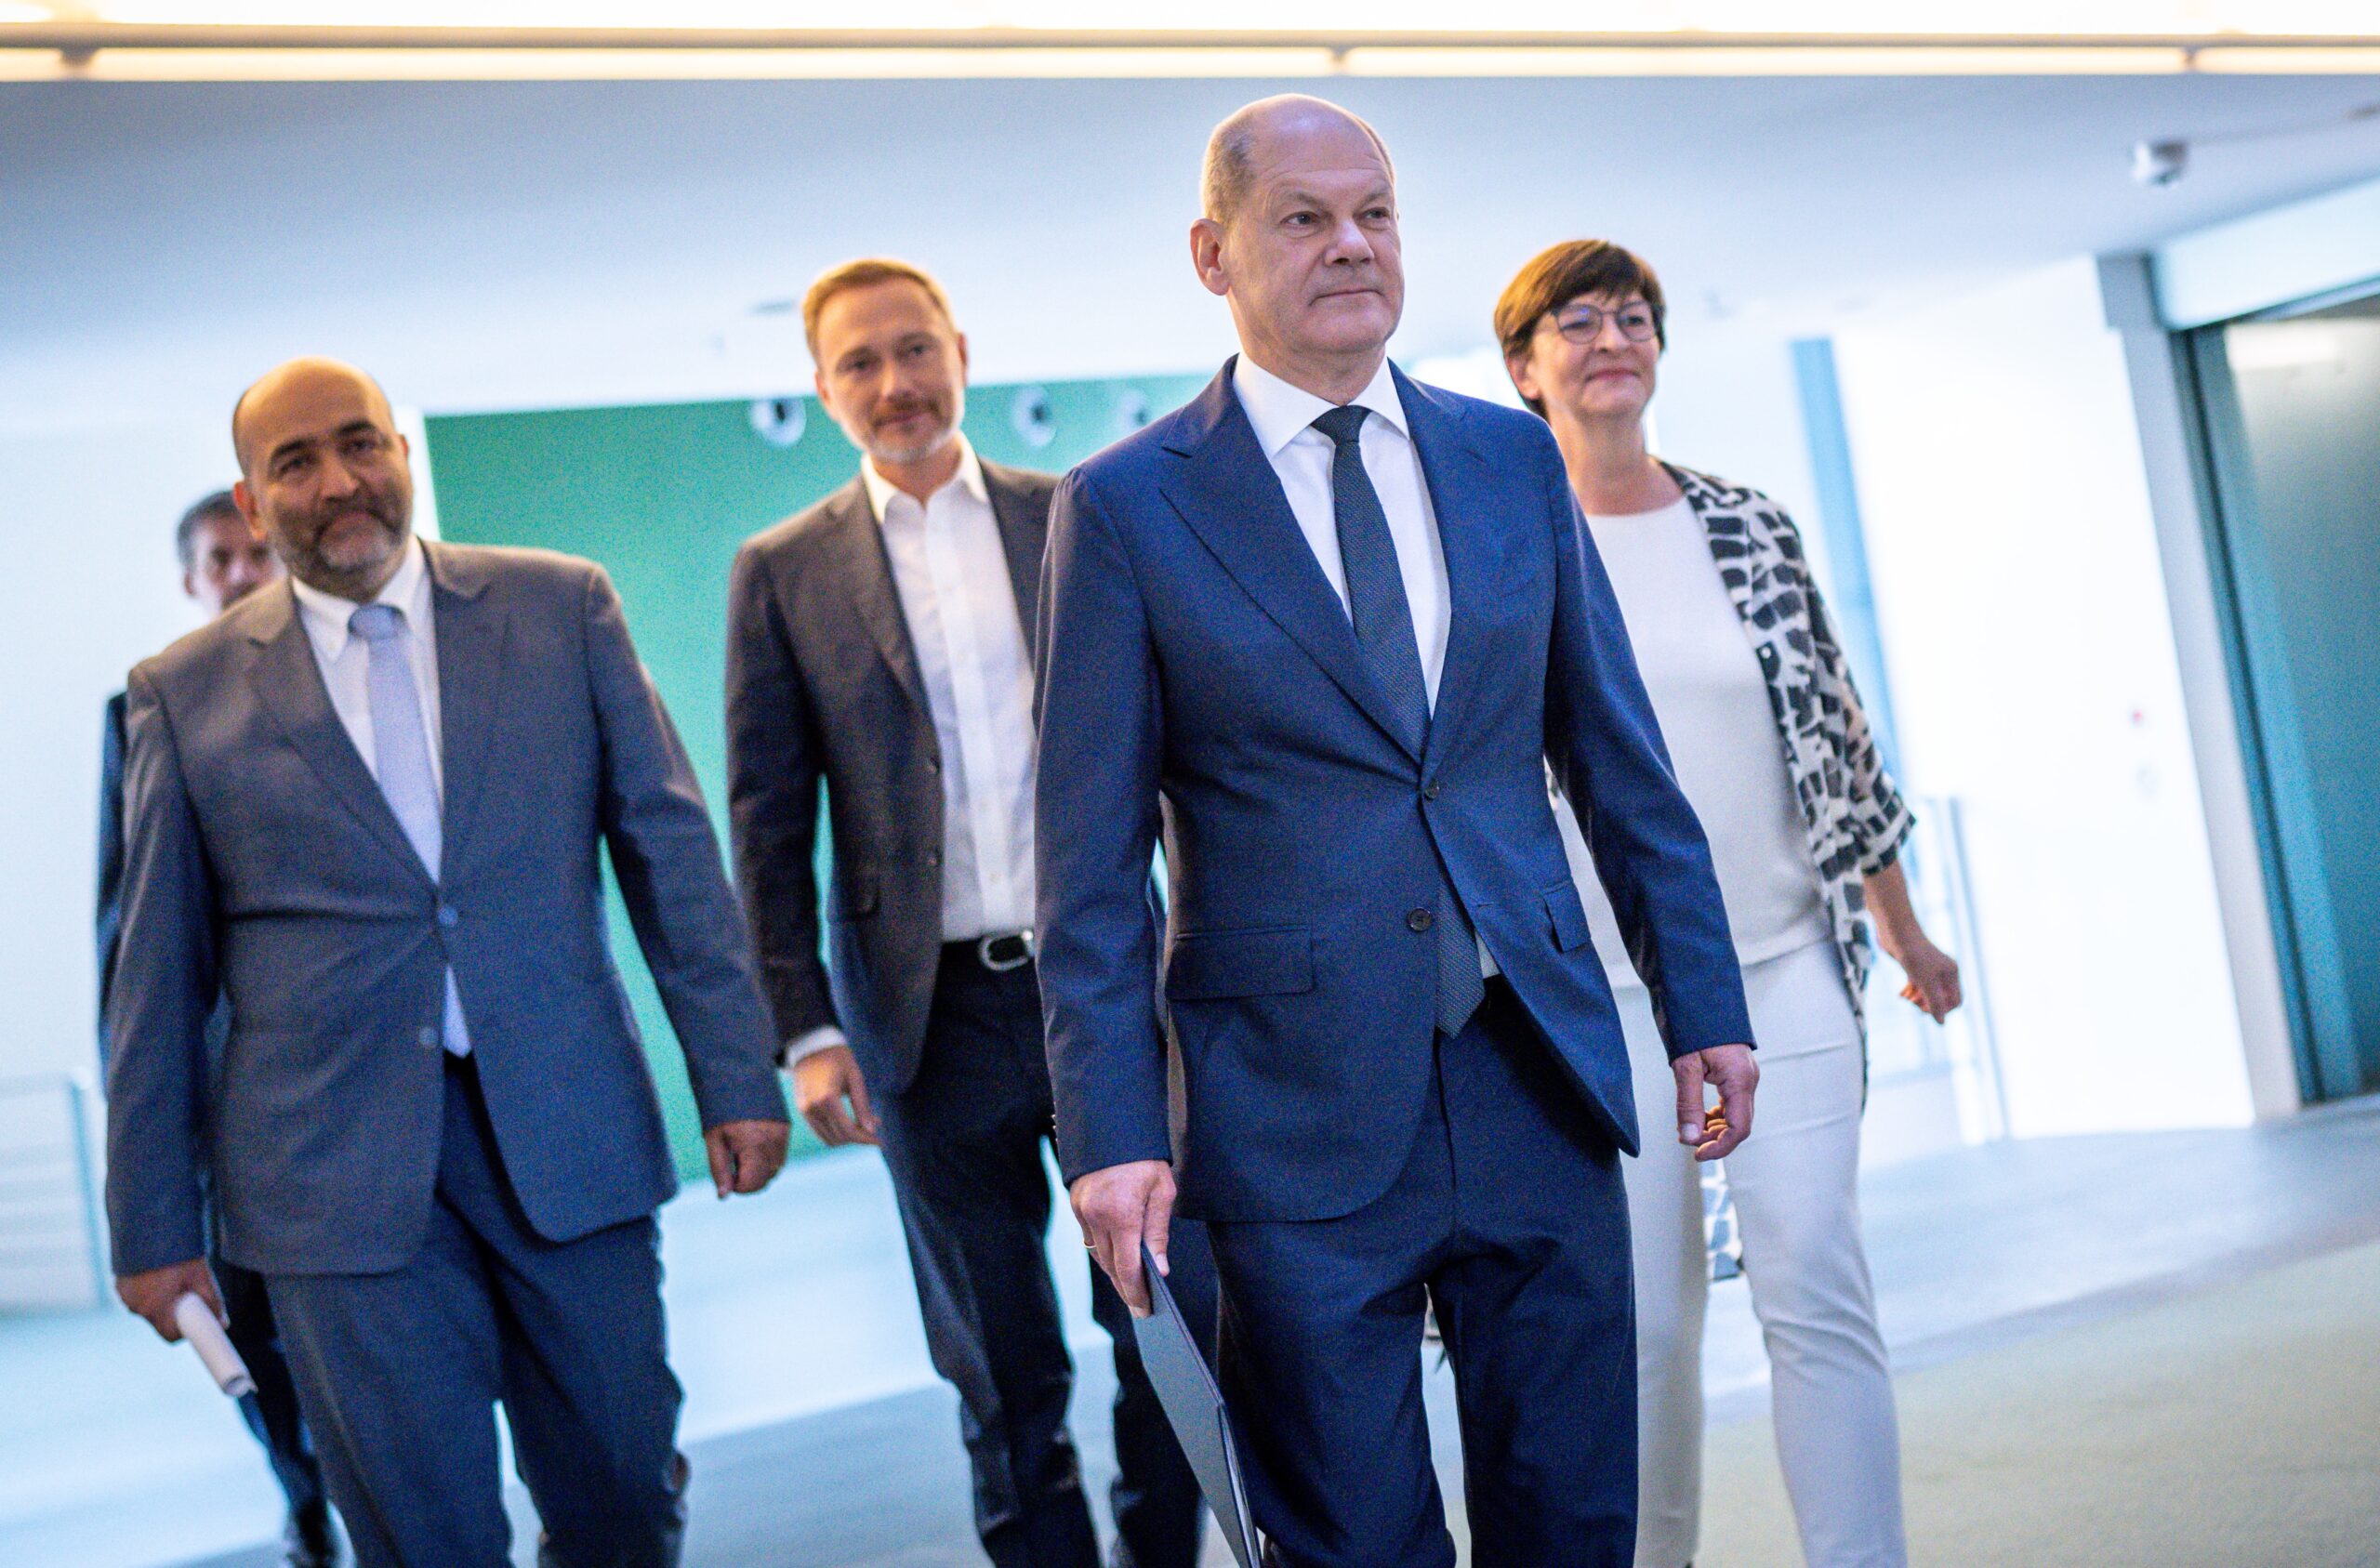 Bundeskanzler Olaf Scholz (SPD, 2.v.r.), kommt neben Omid Nouripour (l.), Bundesvorsitzender der Grünen, Saskia Esken (r.), Bundesvorsitzende der SPD, sowie Finanzminister Christian Lindner (FDP) zur Pressekonferenz nach den Beratungen im Koalitionsausschuss.